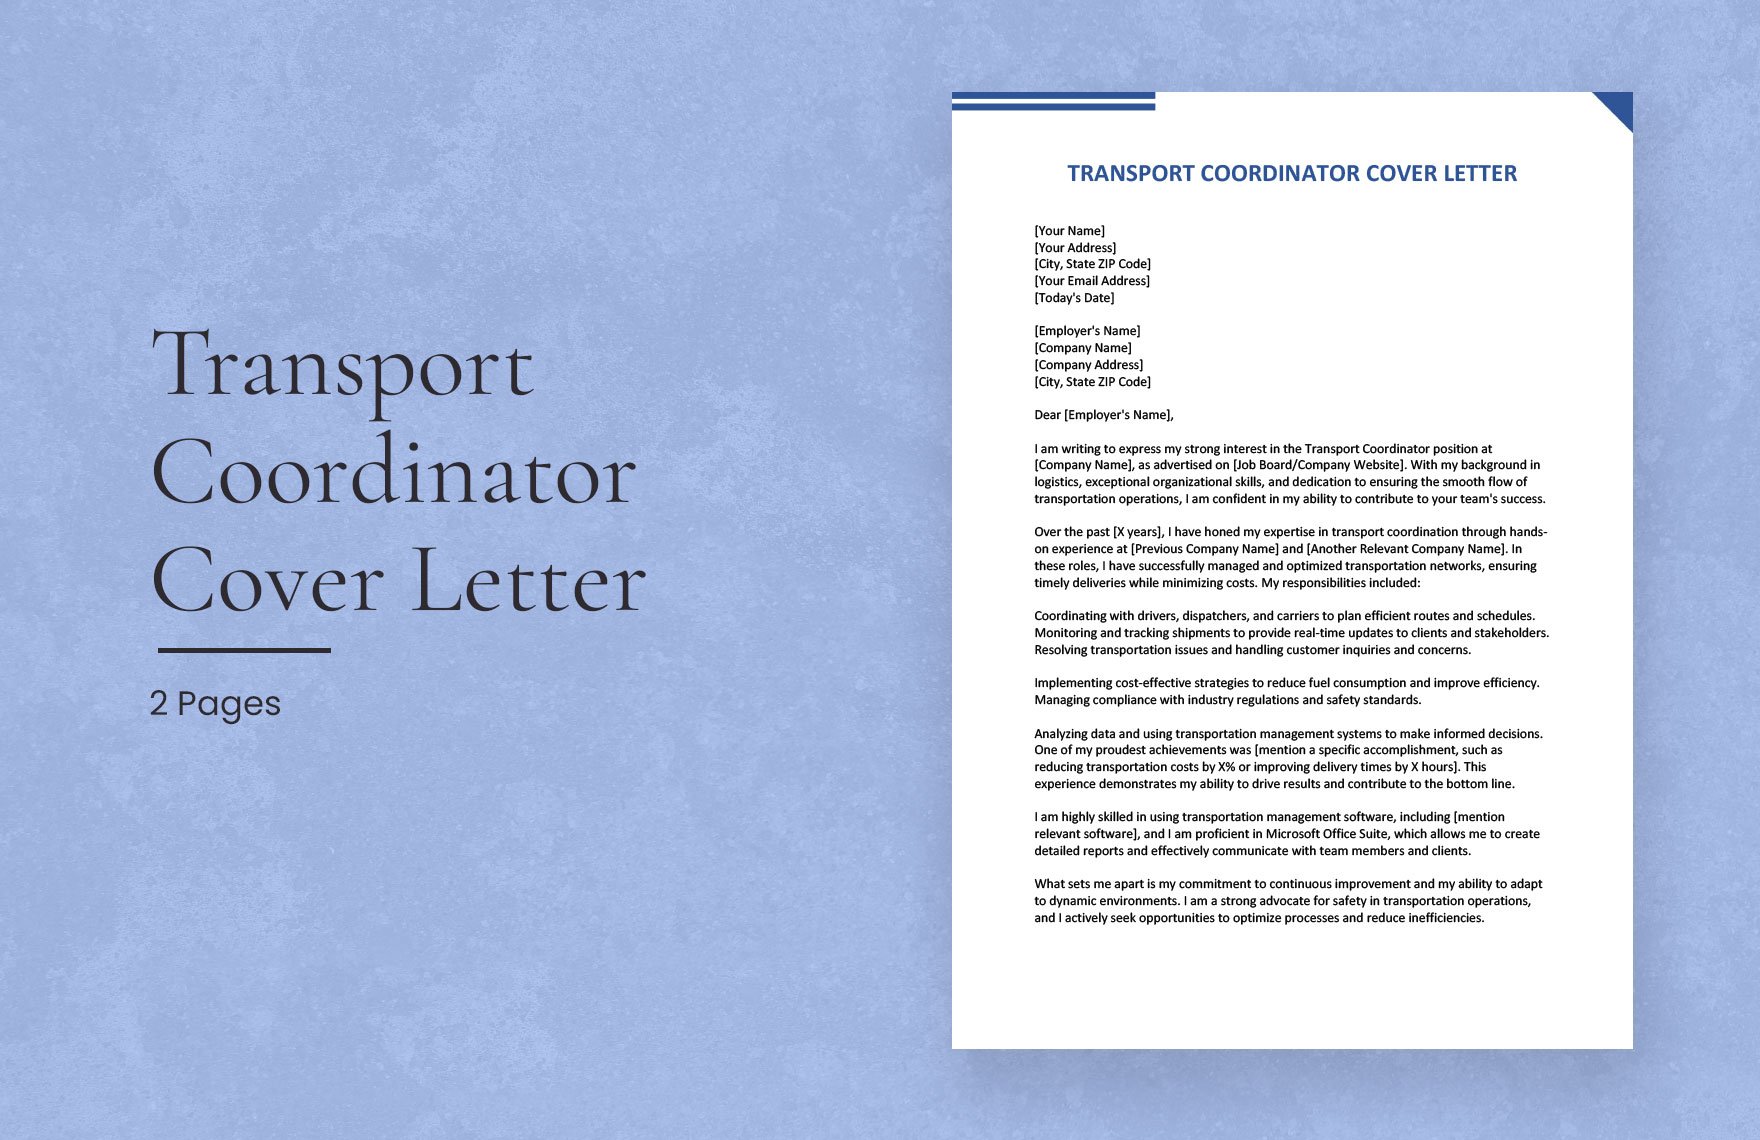 Transport Coordinator Cover Letter